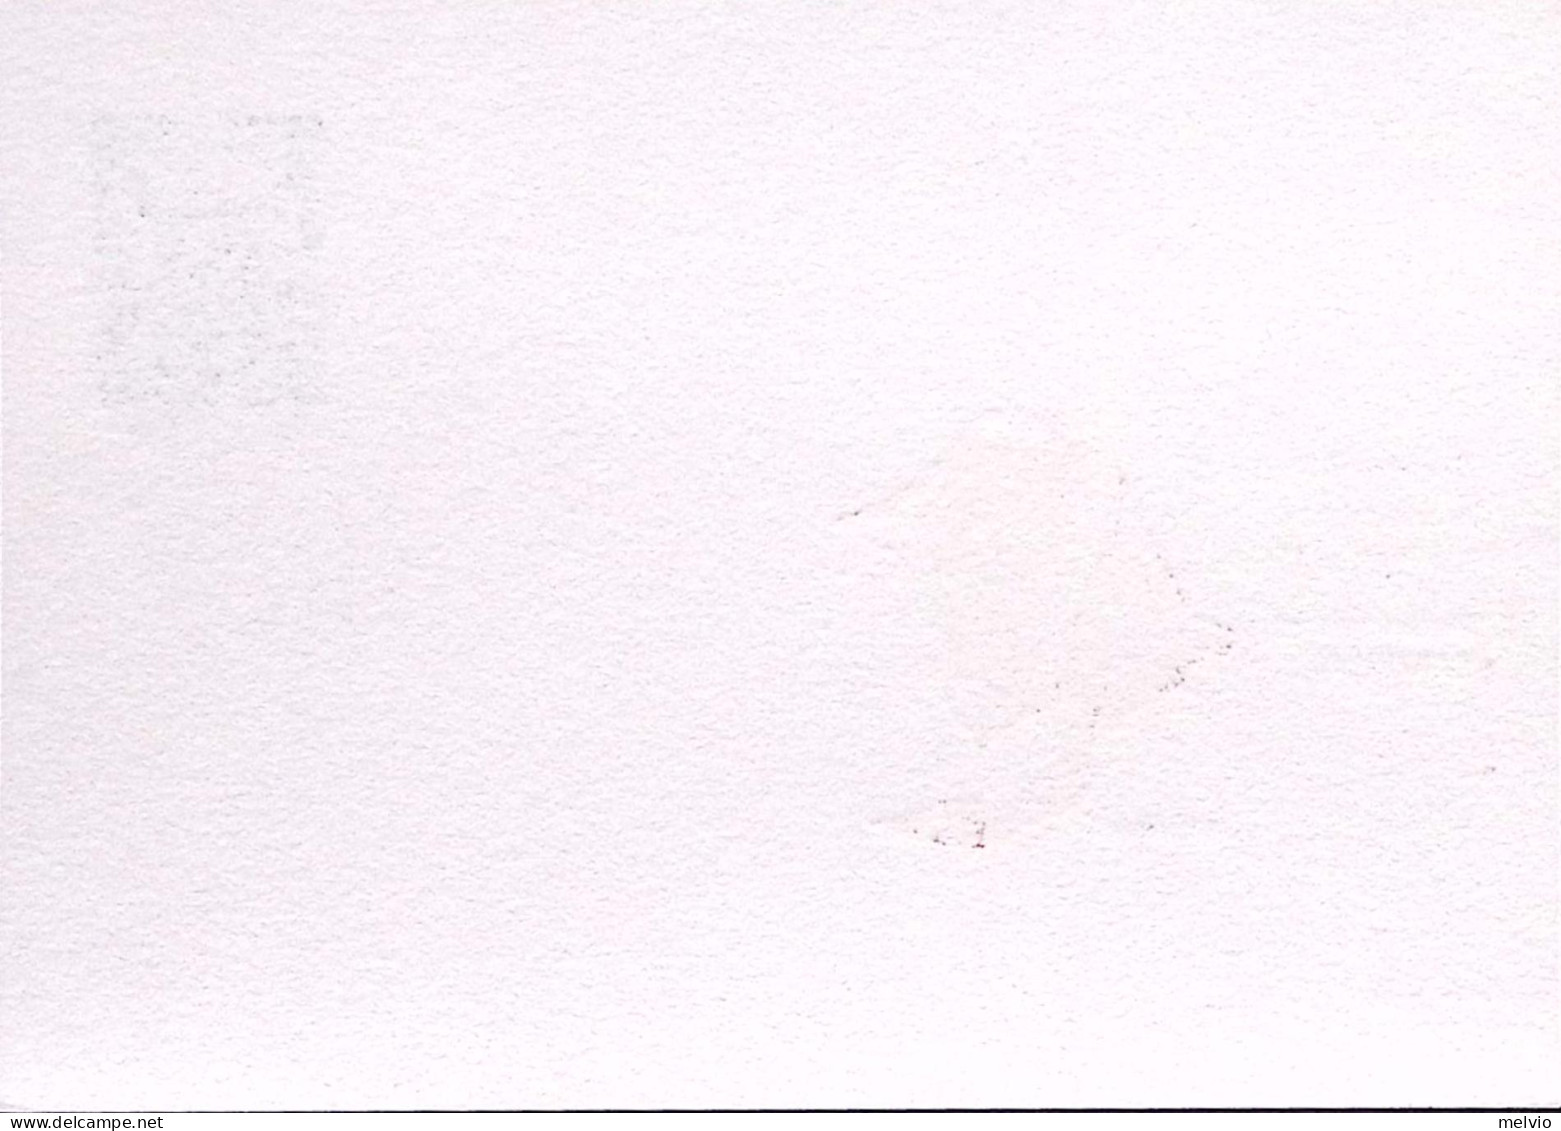 1994-GIOVANNI PAOLO II^a SIRACUSA Sopr.in Rosso RINVIATA Cartolina Postale Lire  - Ganzsachen